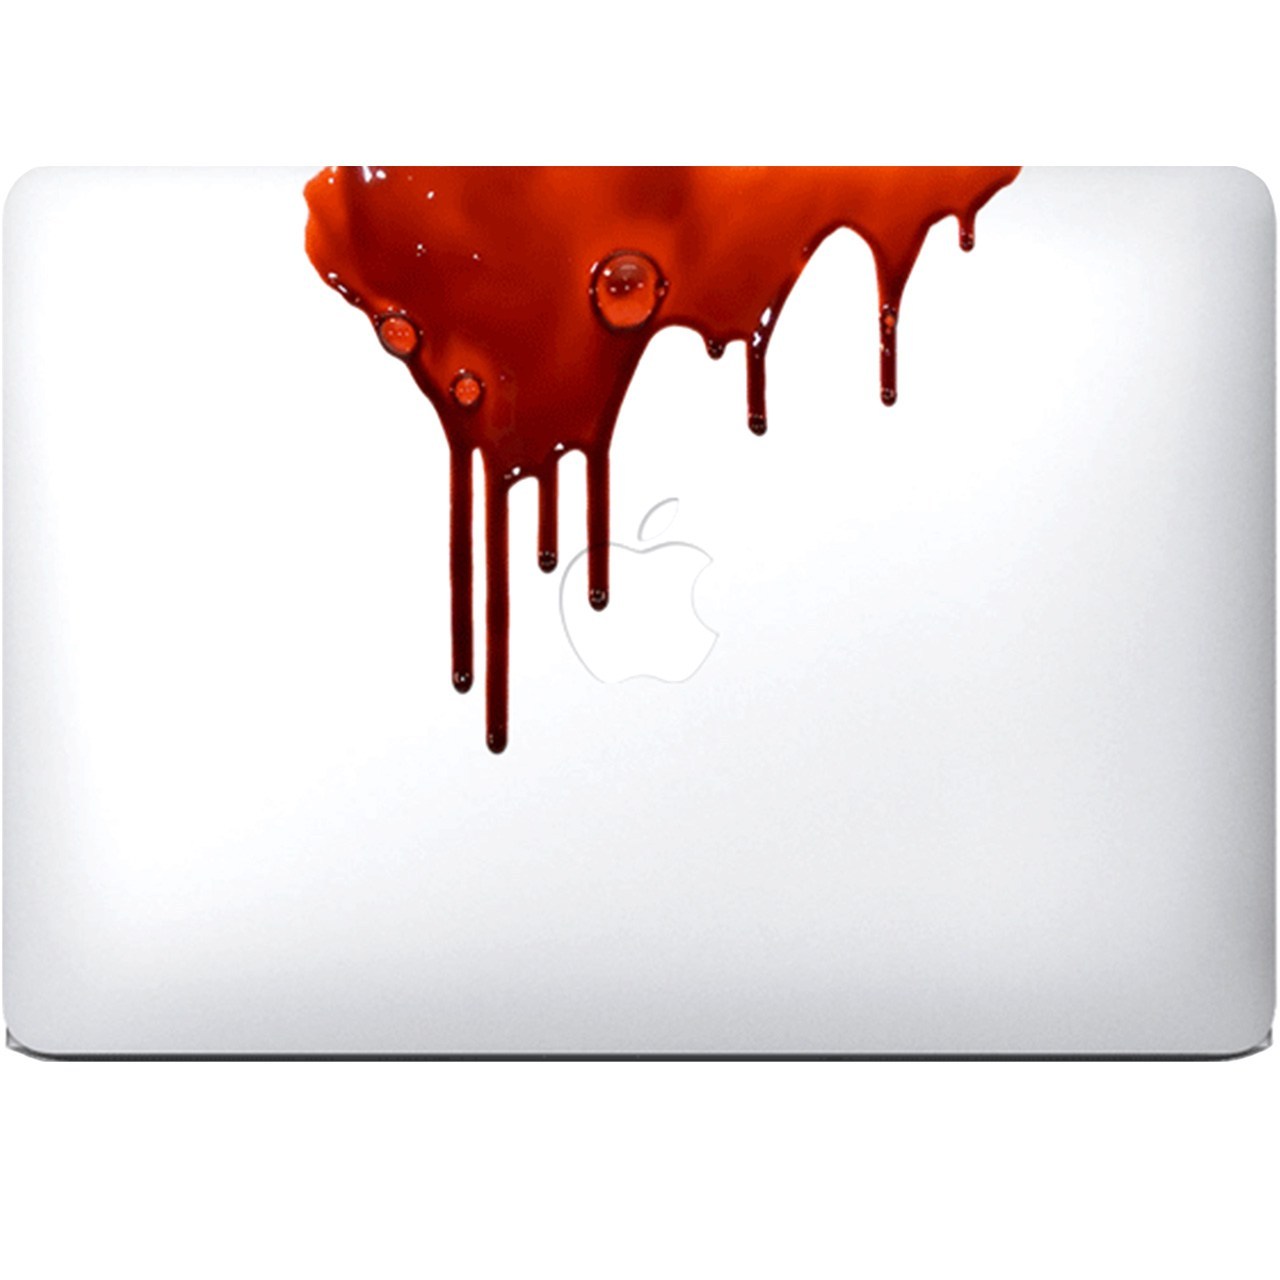 برچسب تزئینی ونسونی مدل Blood Gush No.1 مناسب برای مک بوک ایر 13 اینچی